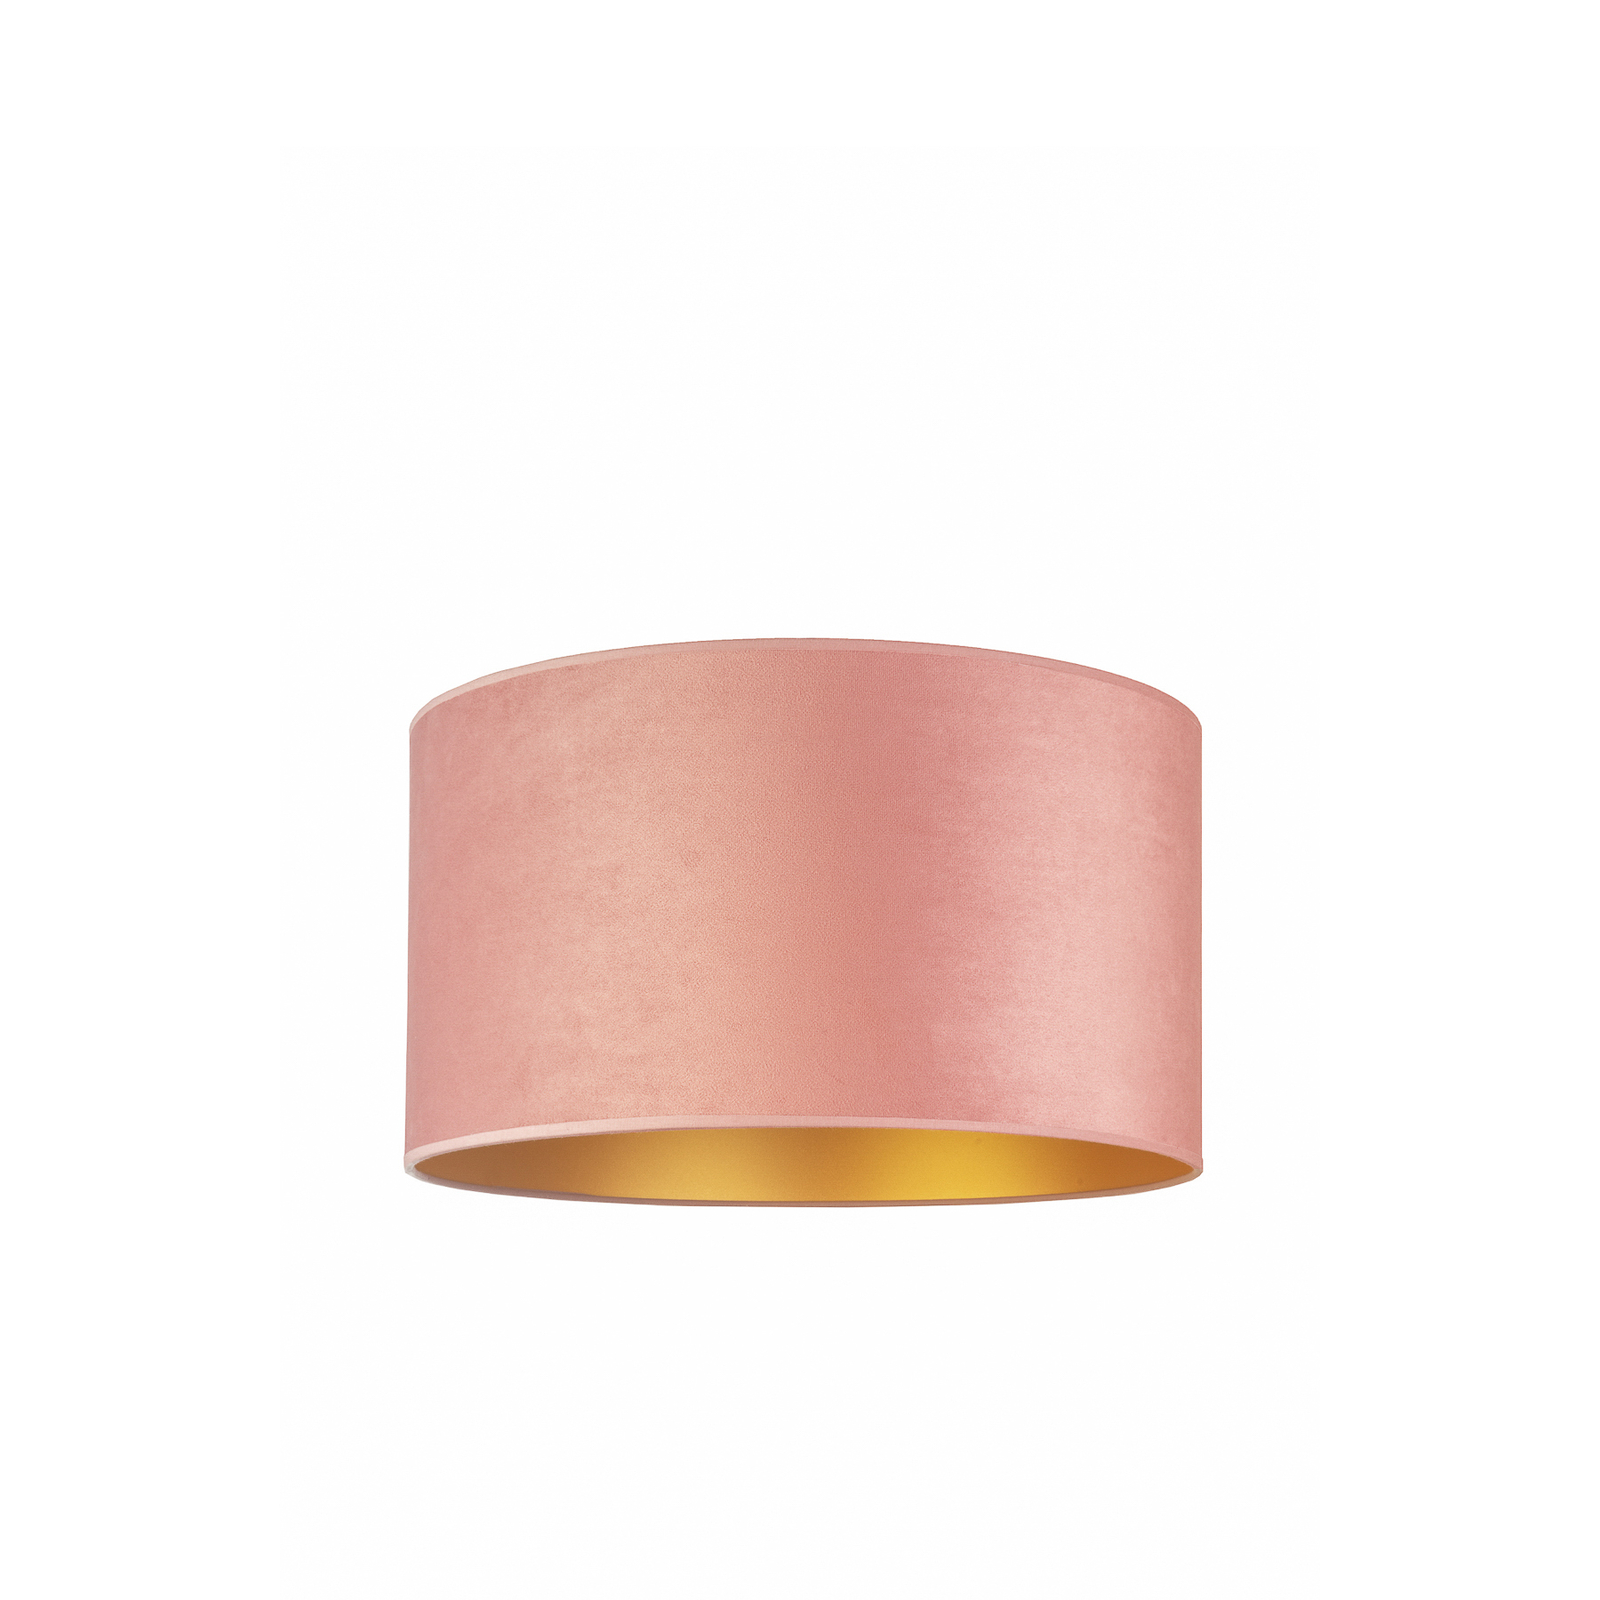 Deckenlampe Golden Roller Ø 40cm hellrosa/gold